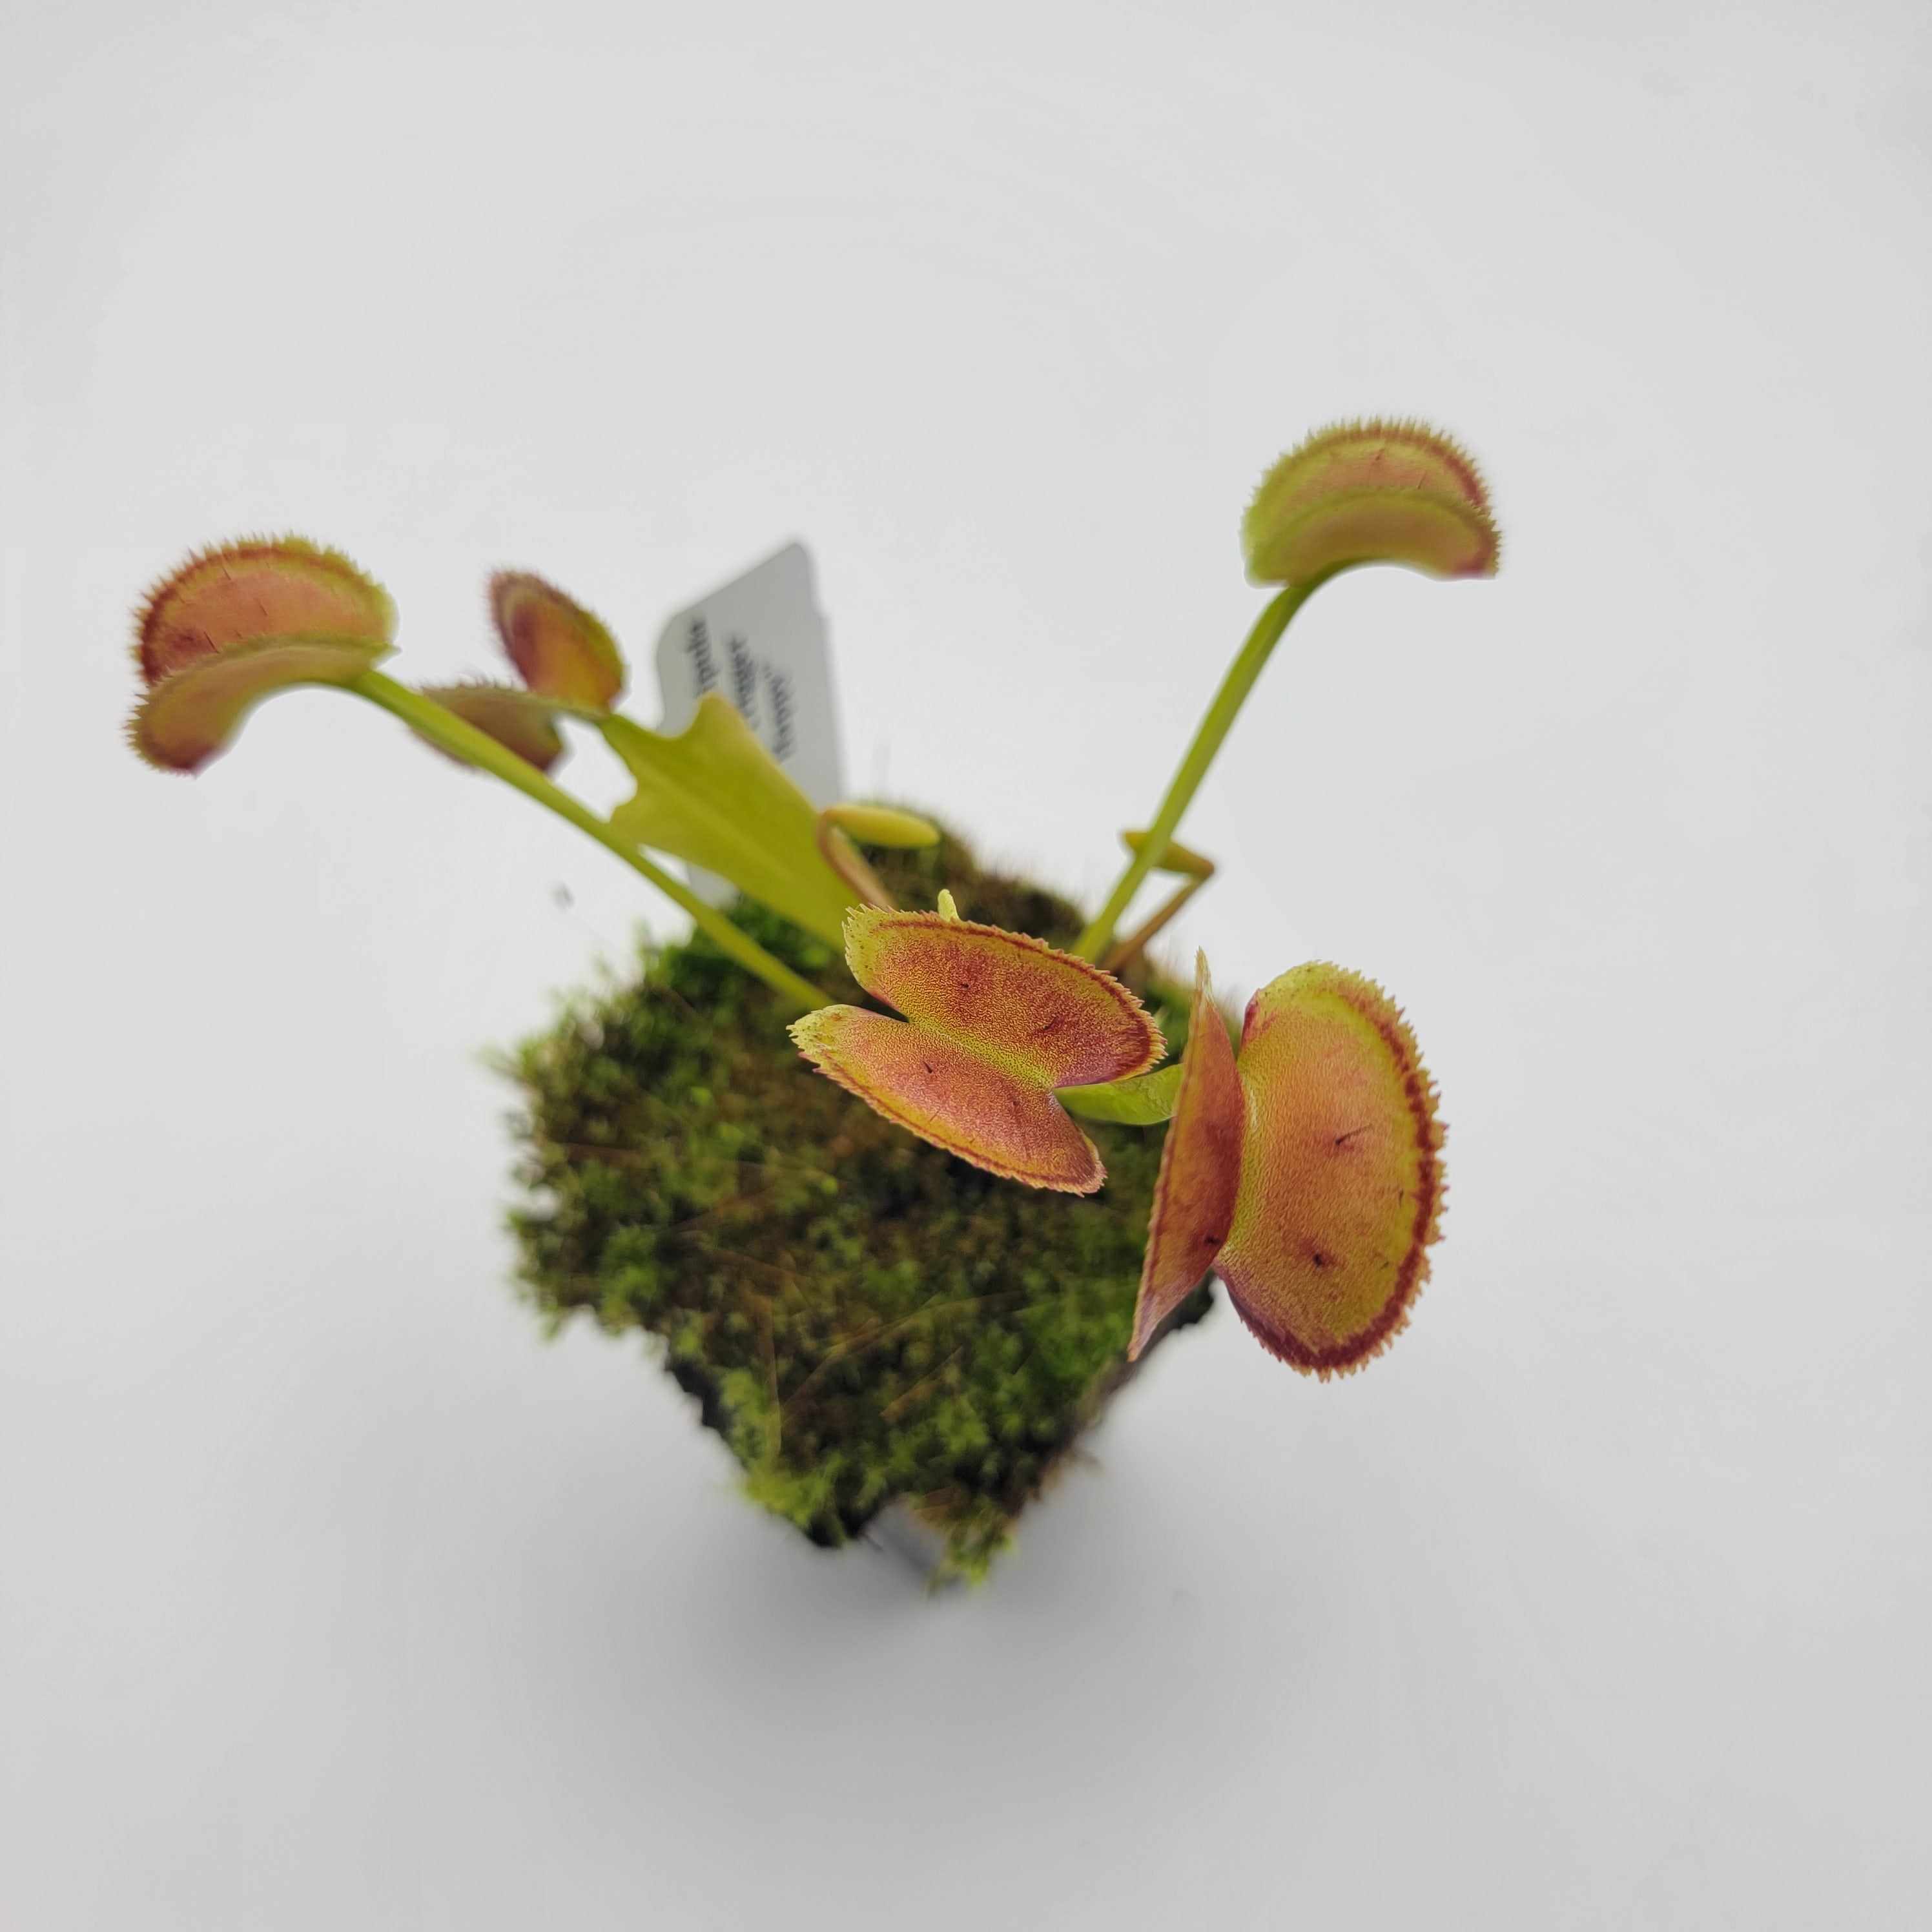 Venus flytrap (Dionaea muscipula) "FTS Trigger Happy" - Rainbow Carnivorous Plants LLC